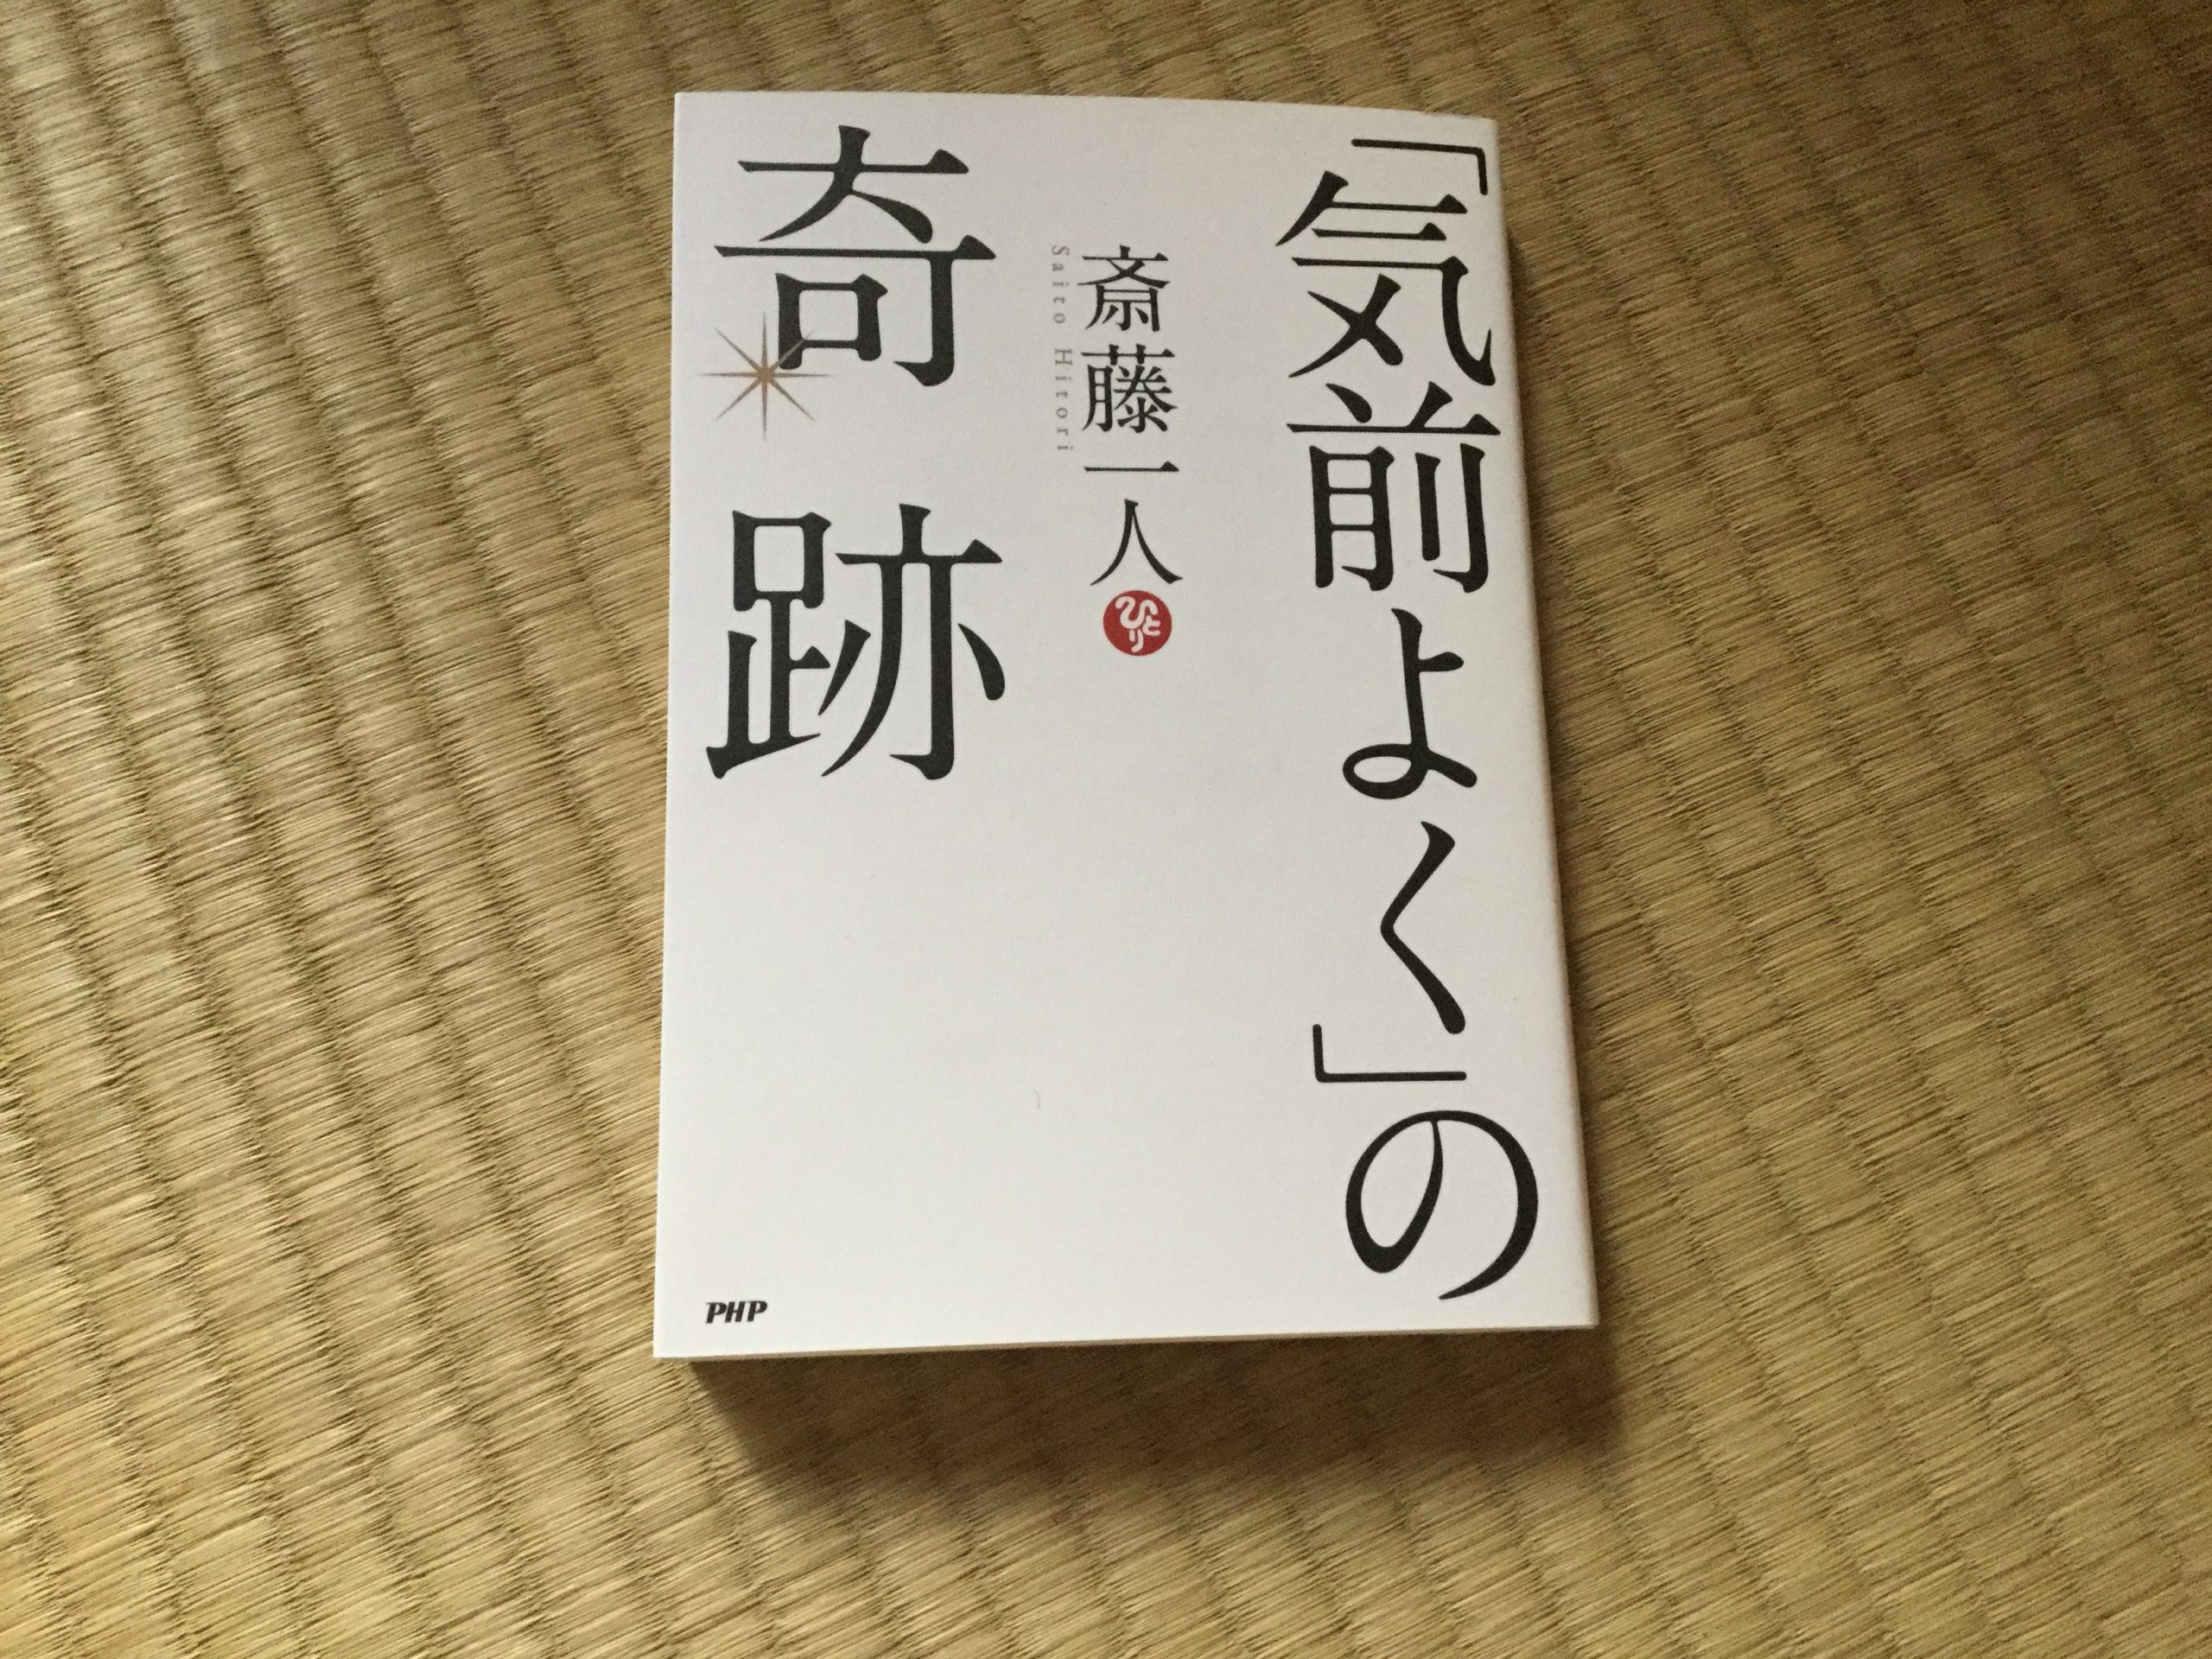 自信がない、元気が出ない人へおすすめの本　斎藤一人さんの「気前よく」の奇跡